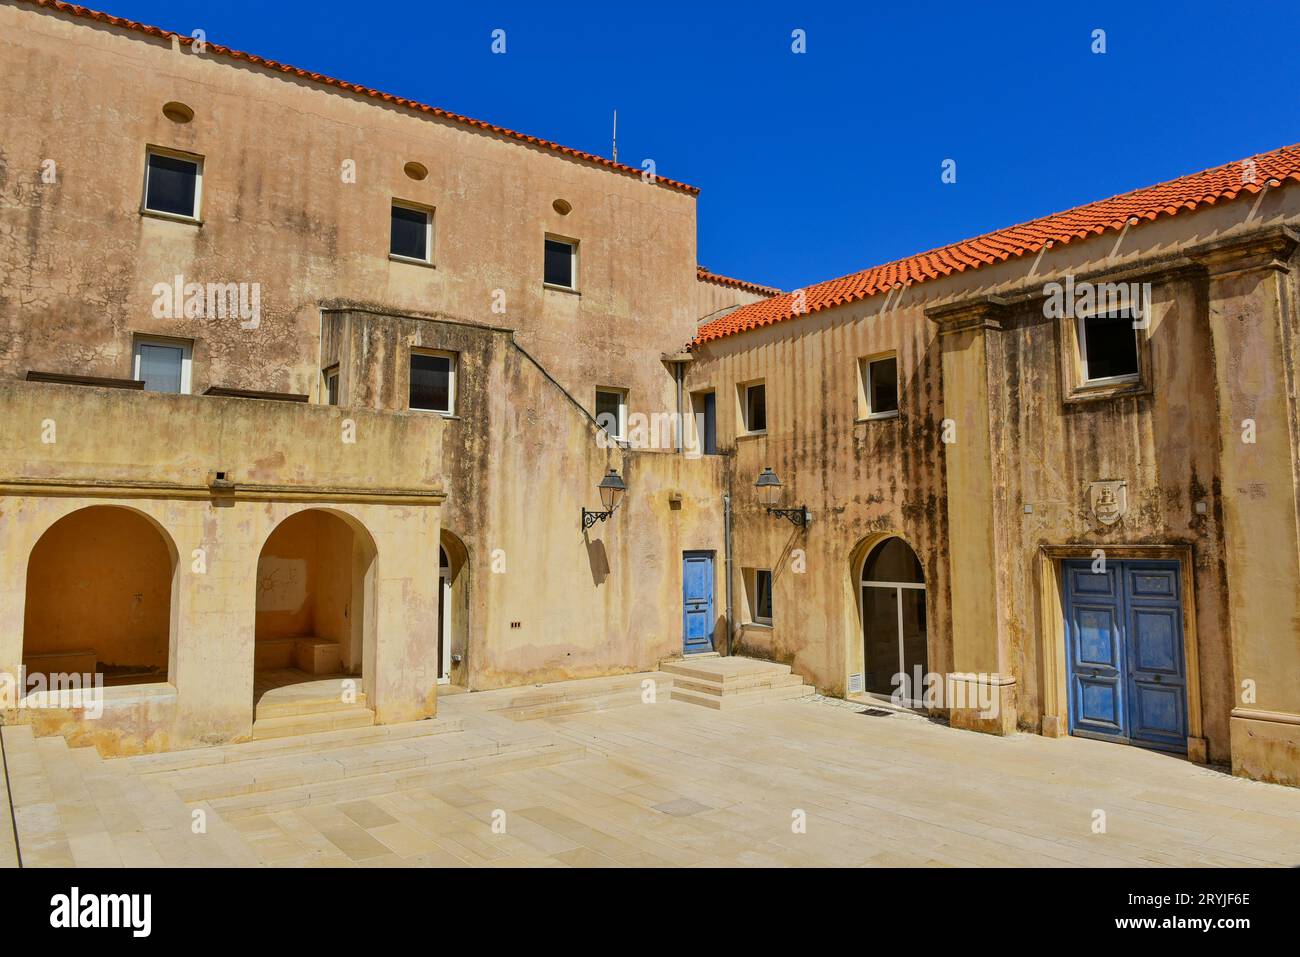 Una piazza di fronte ad un edificio governativo vicino all'Église Saint Dominique nella vecchia cittadella di Bonifacio, Corsica, luglio 2016 Foto Stock